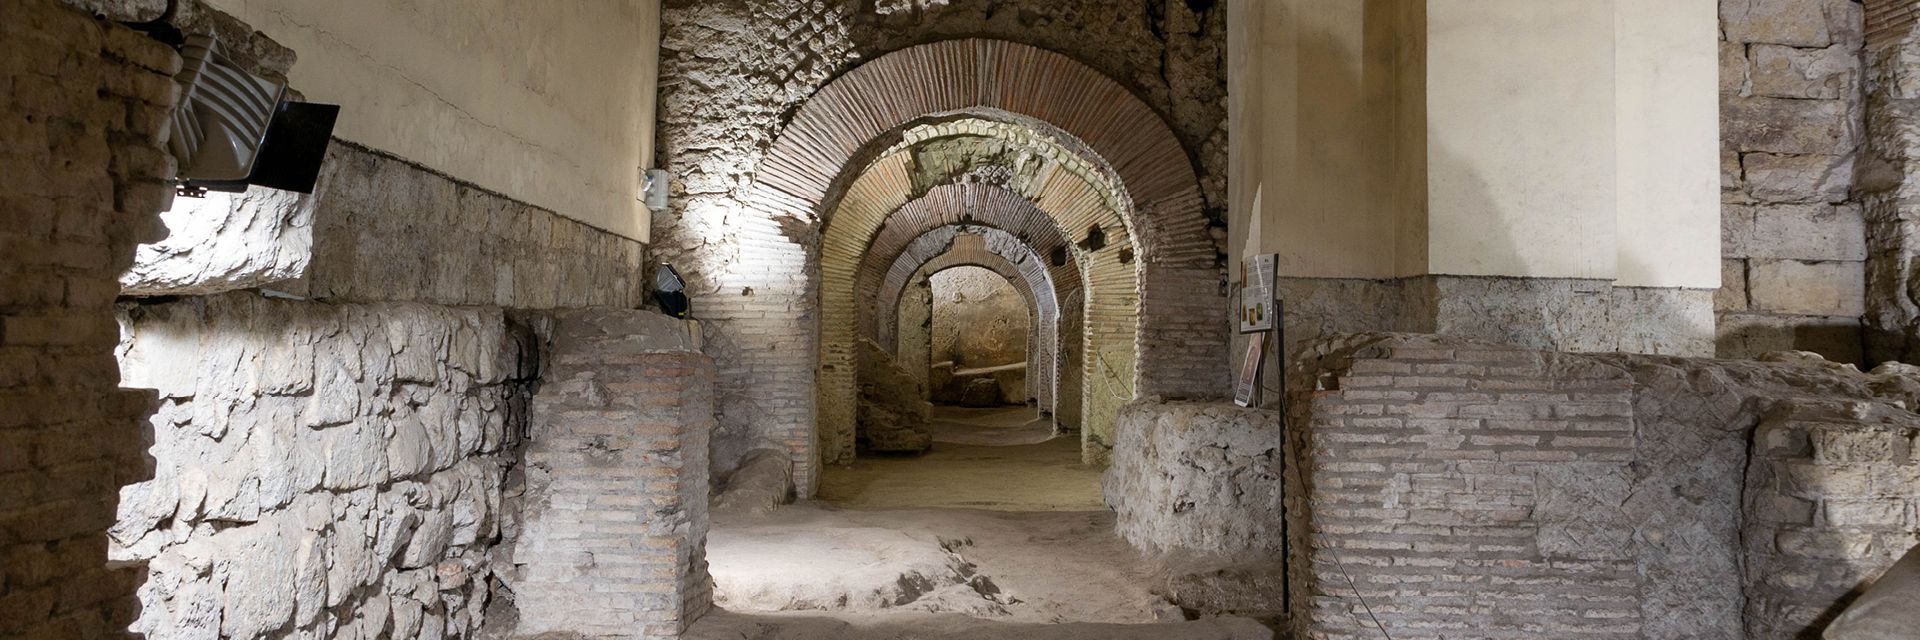 Musée de l'œuvre de San Lorenzo Maggiore et des fouilles archéologiques